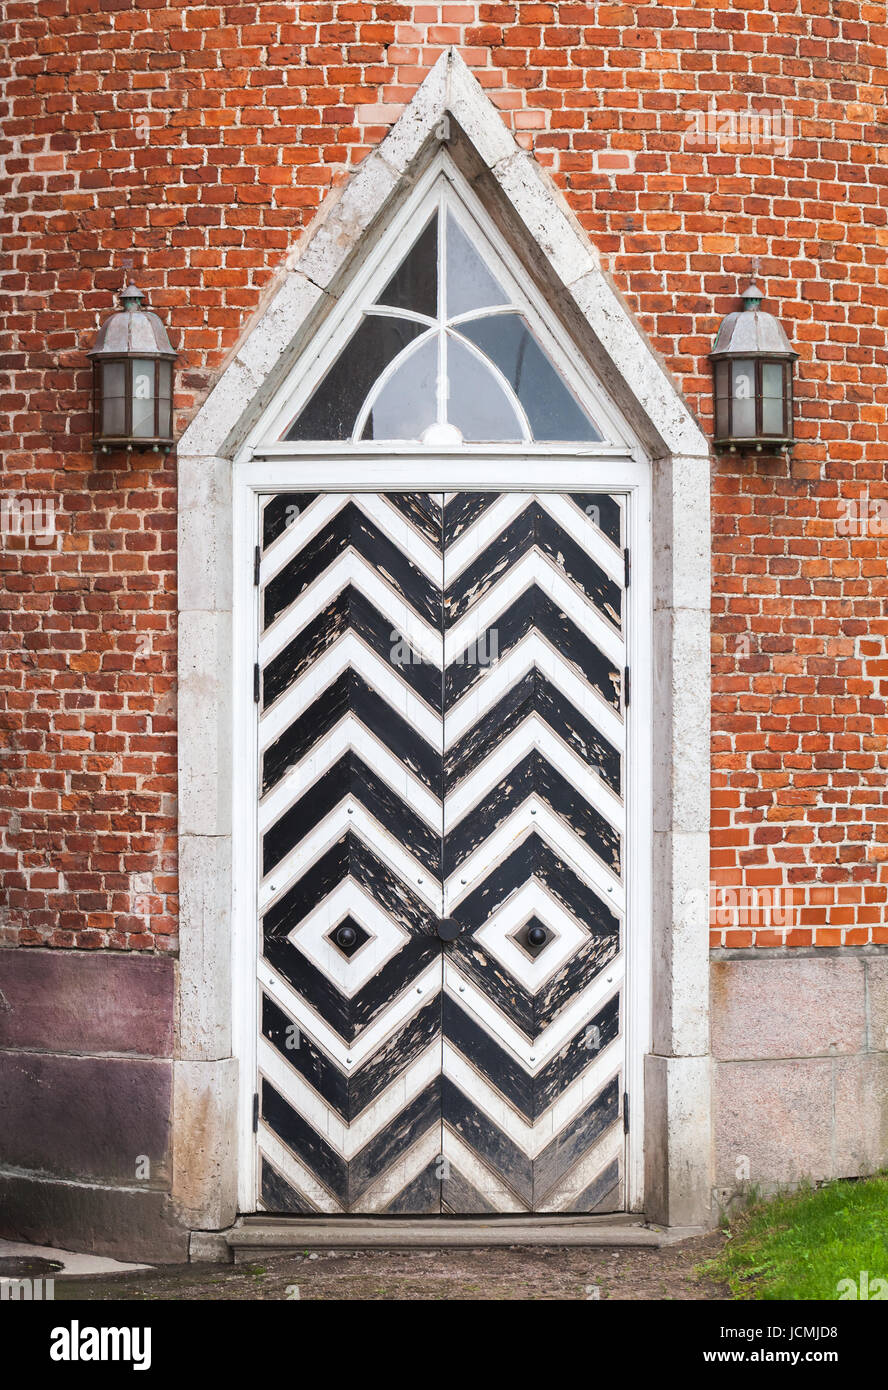 La porte en bois en mur de briques rouges, architecture néo-gothique de style. La texture d'arrière-plan Banque D'Images